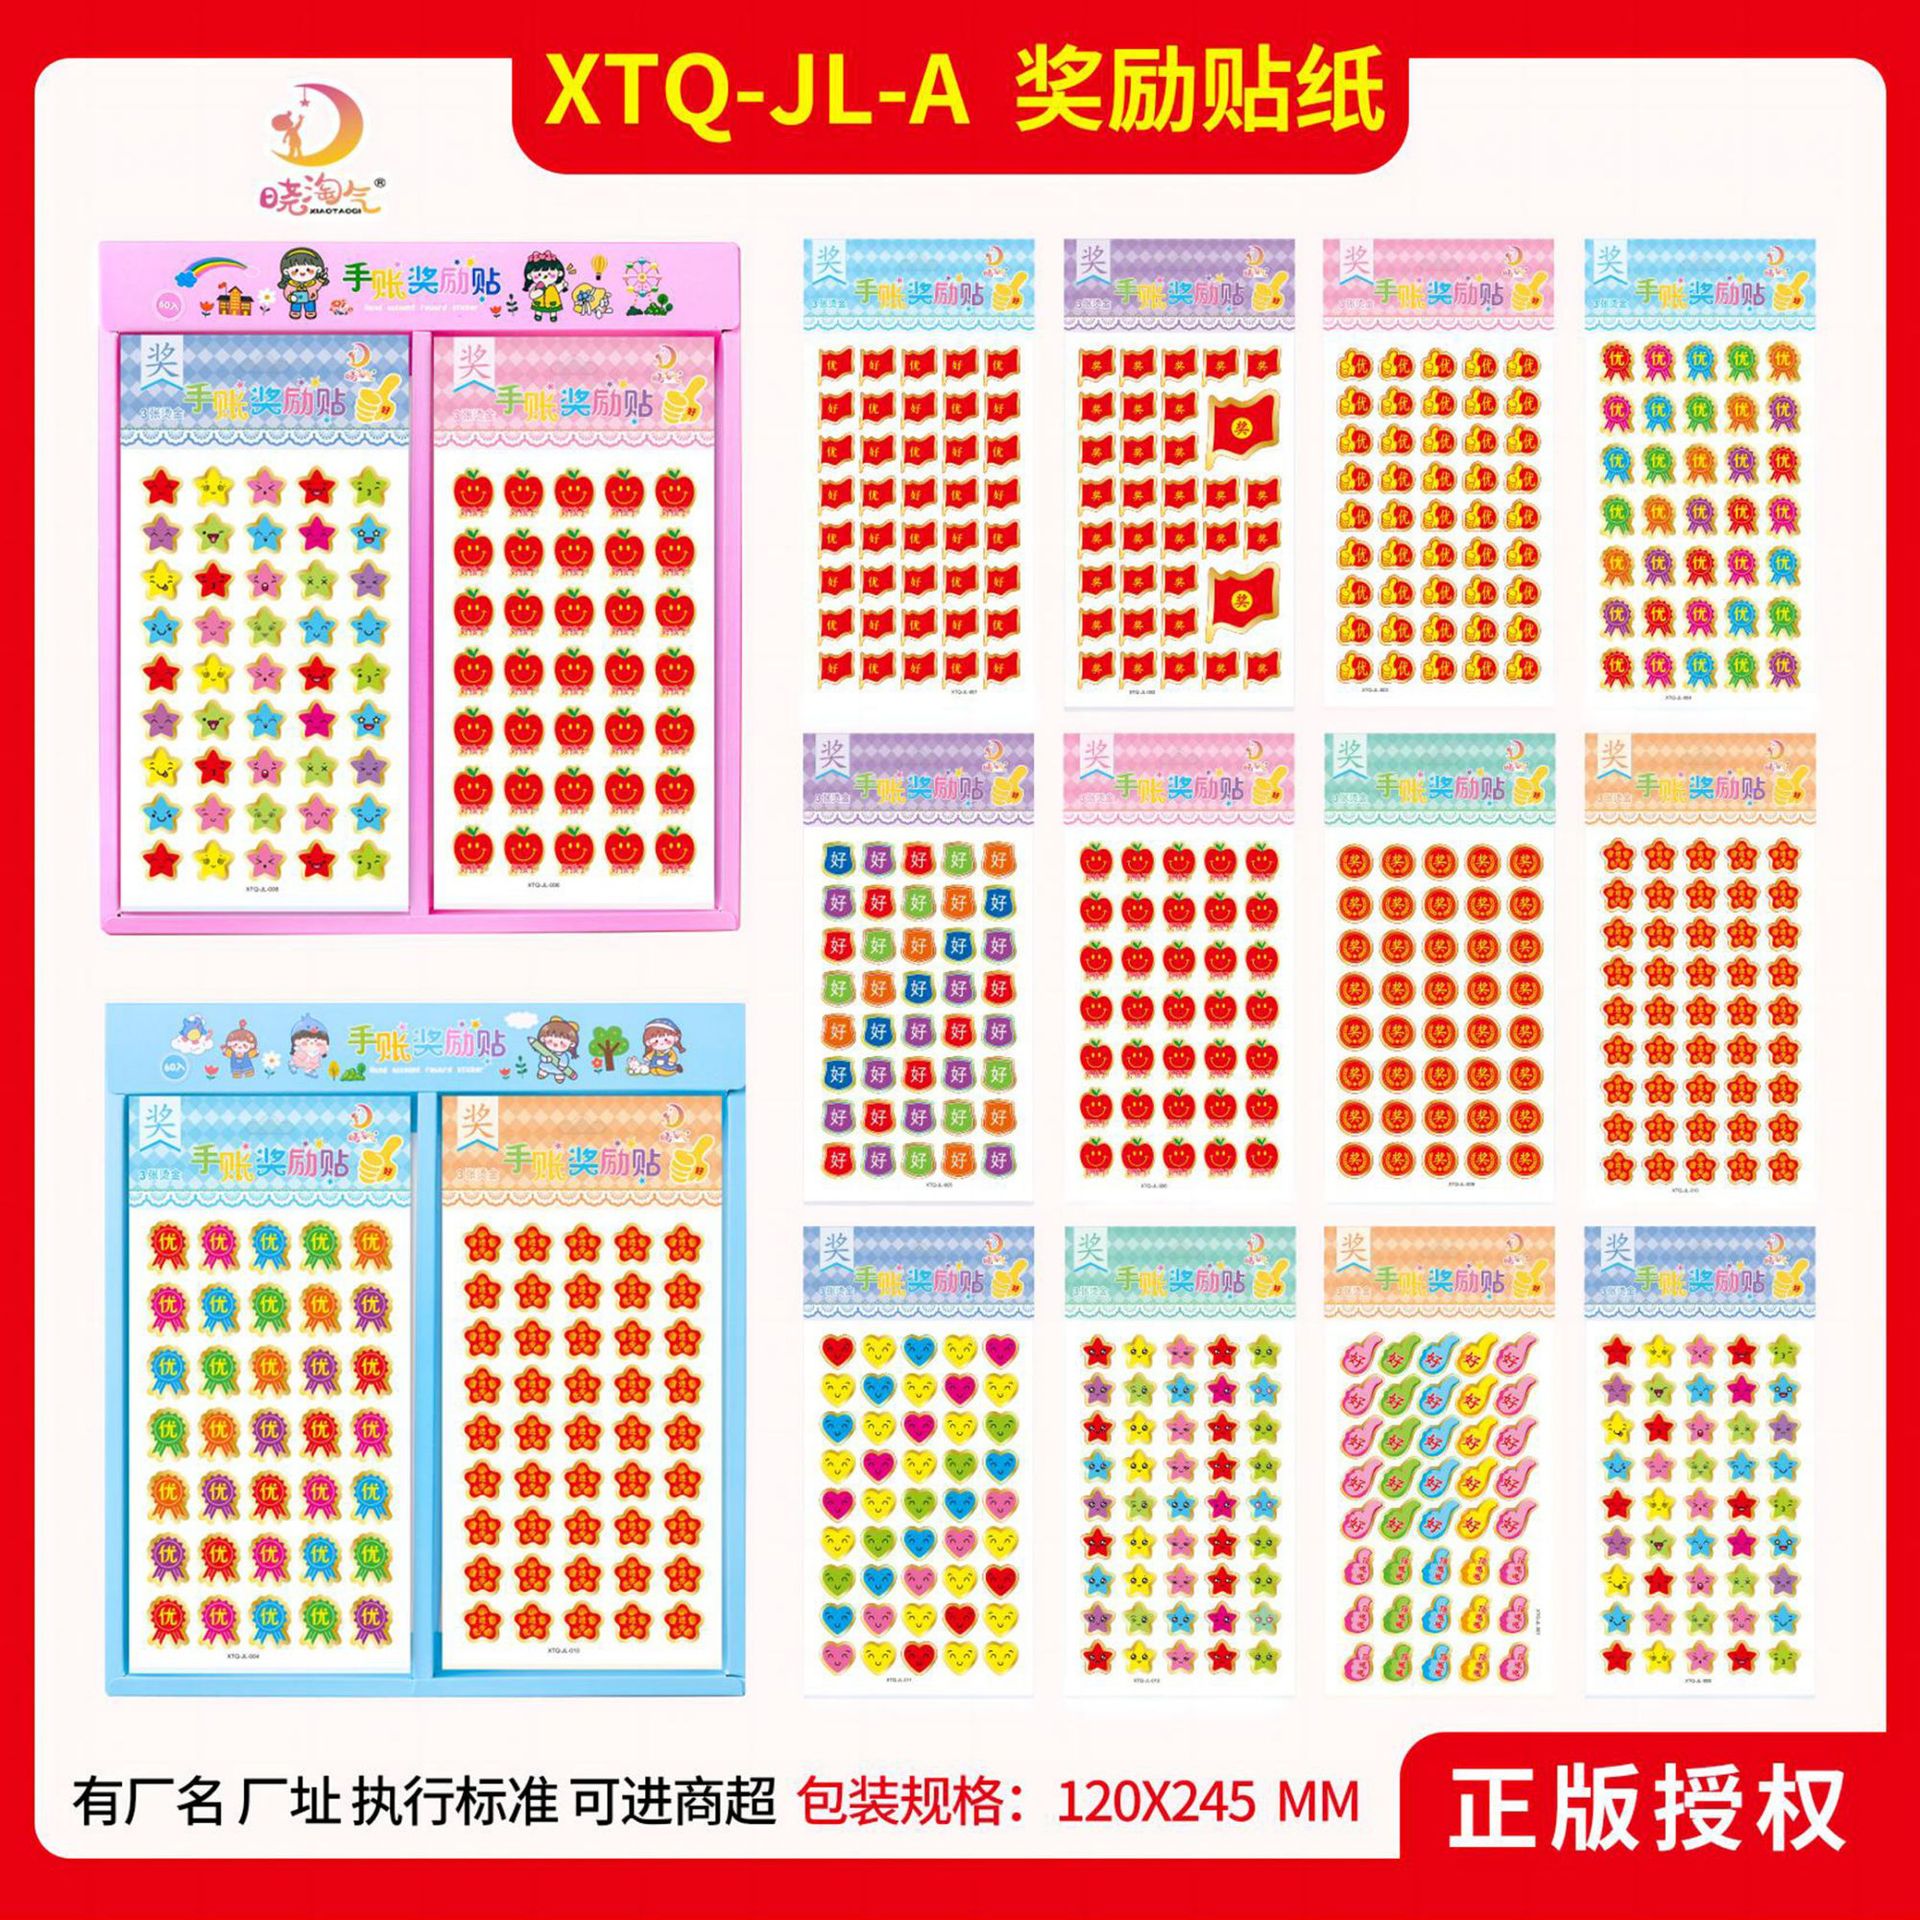 XTQ-JL-a Hand Account Cartoon Sticker Kindergarten Teachers Primary School Students Little Red Flower Thumb Points Reward Sticker